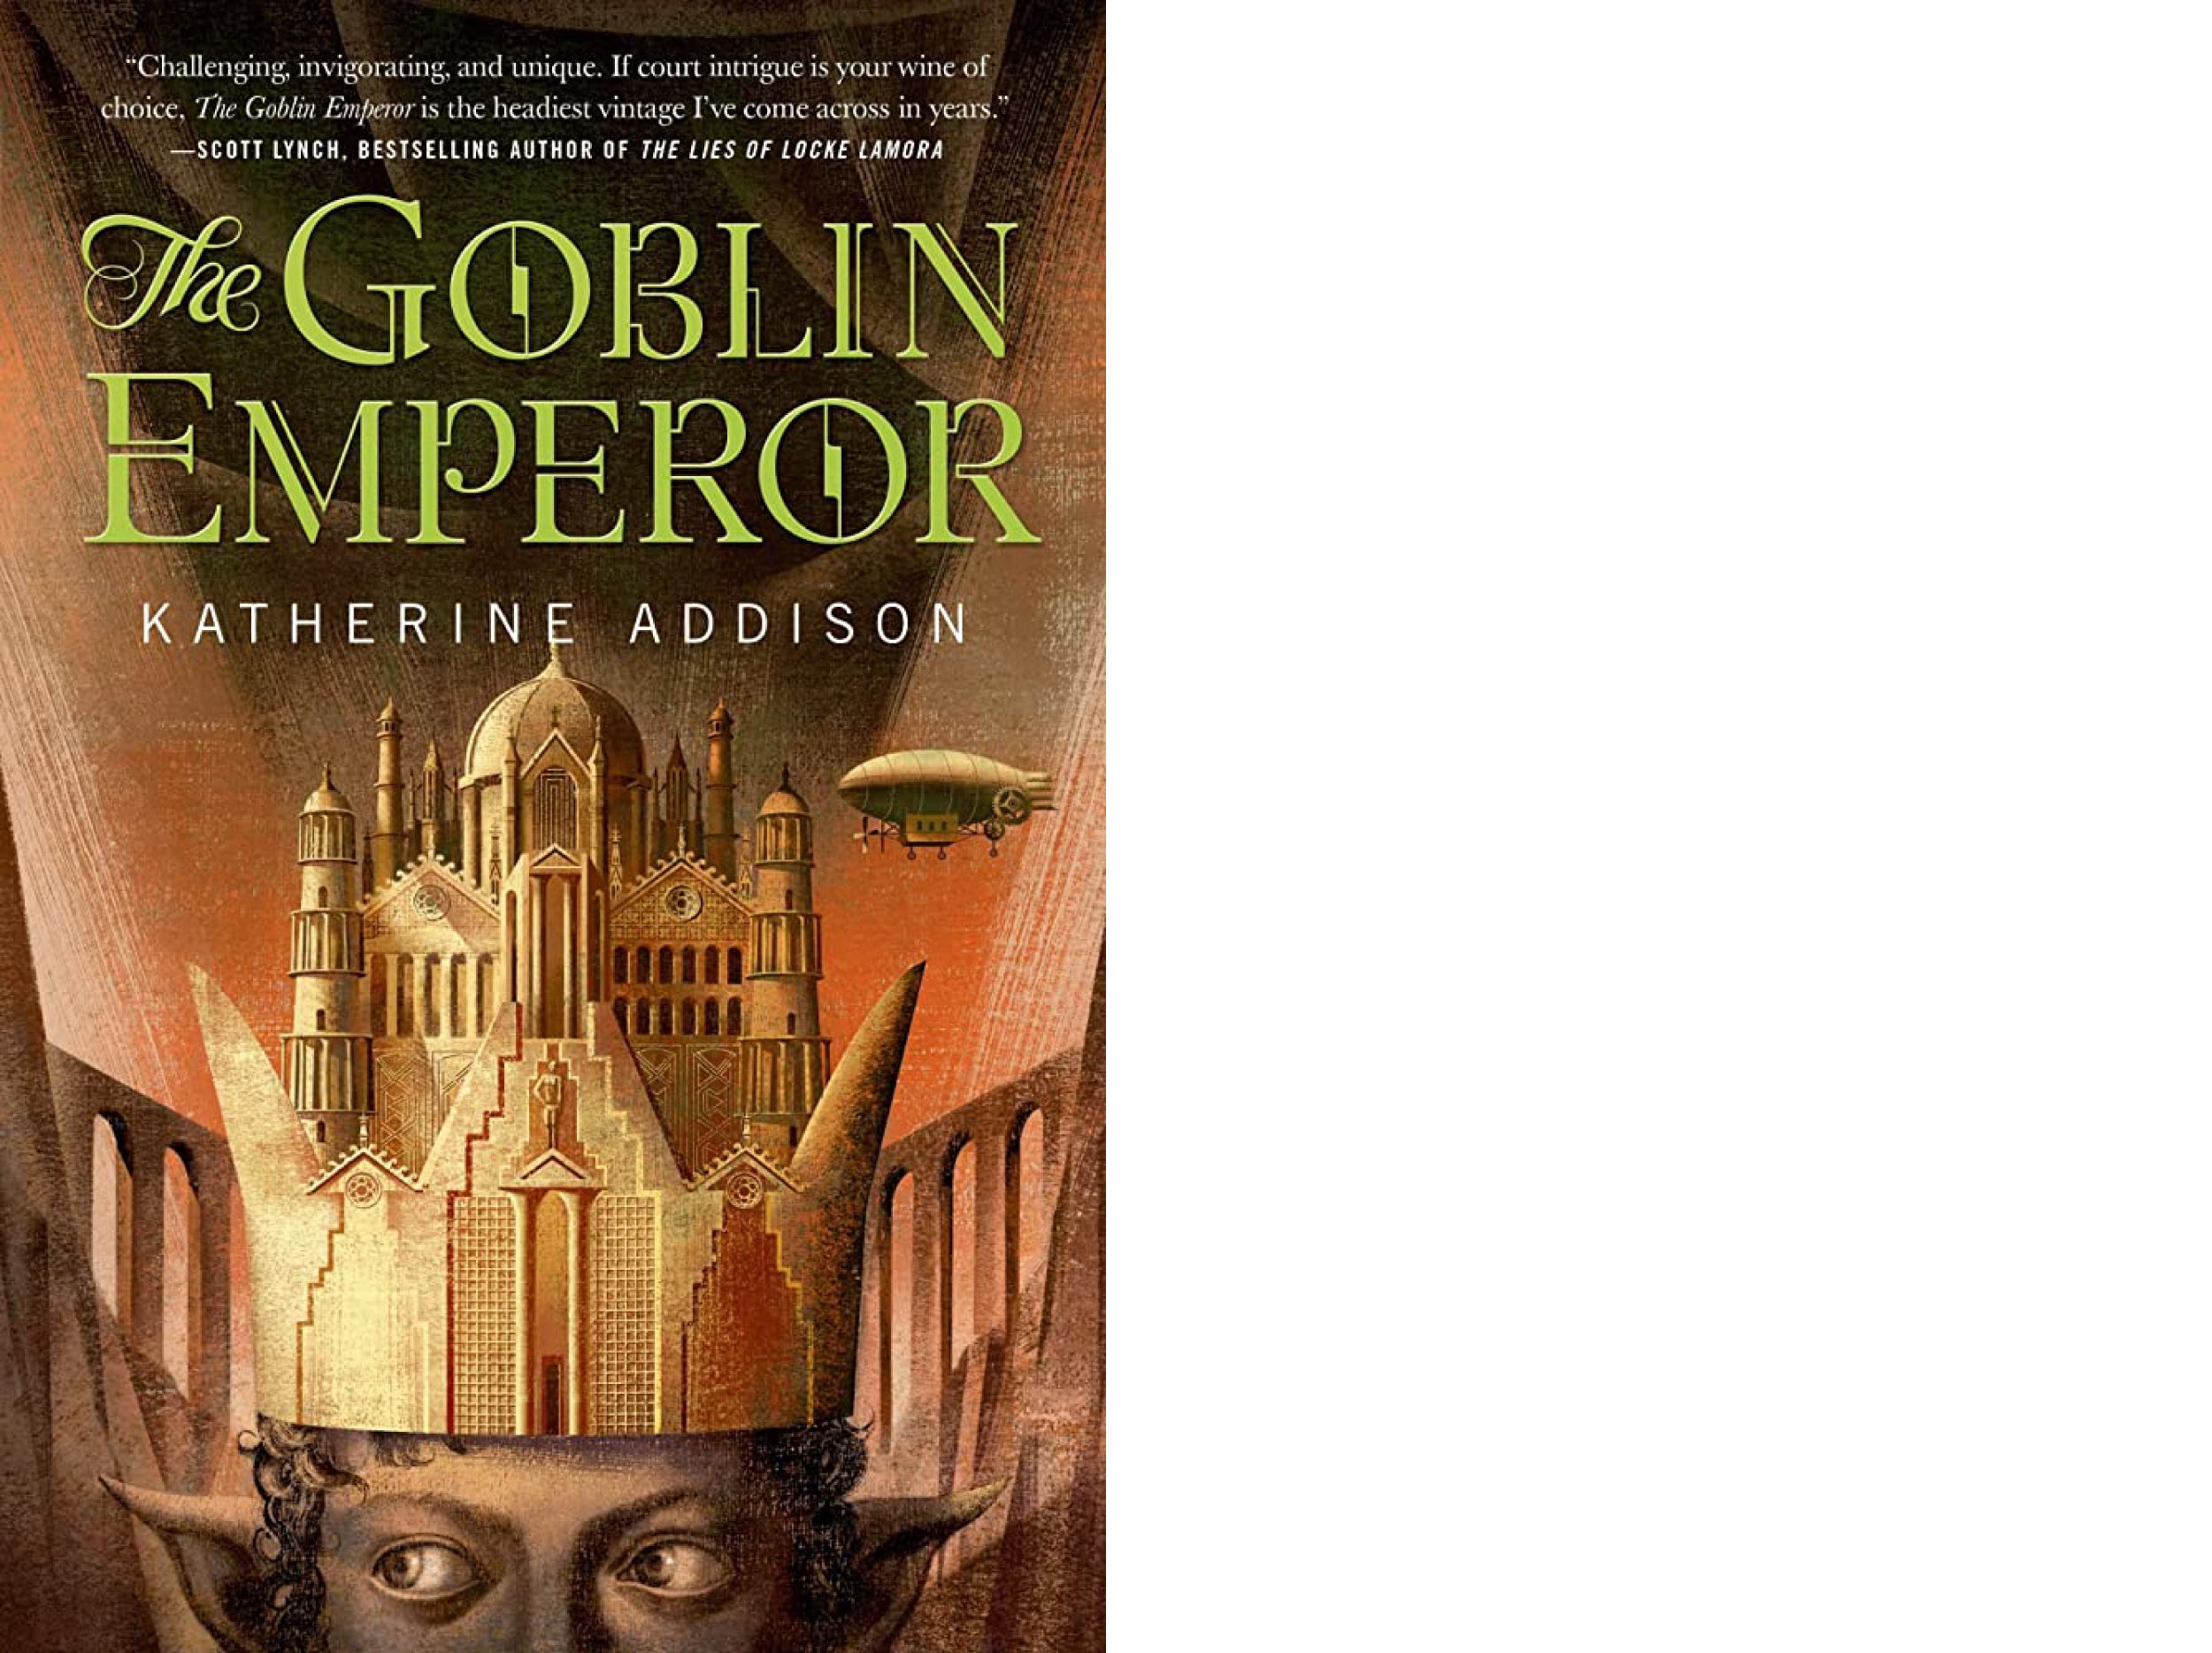 Book cover: "The Goblin Emperor."